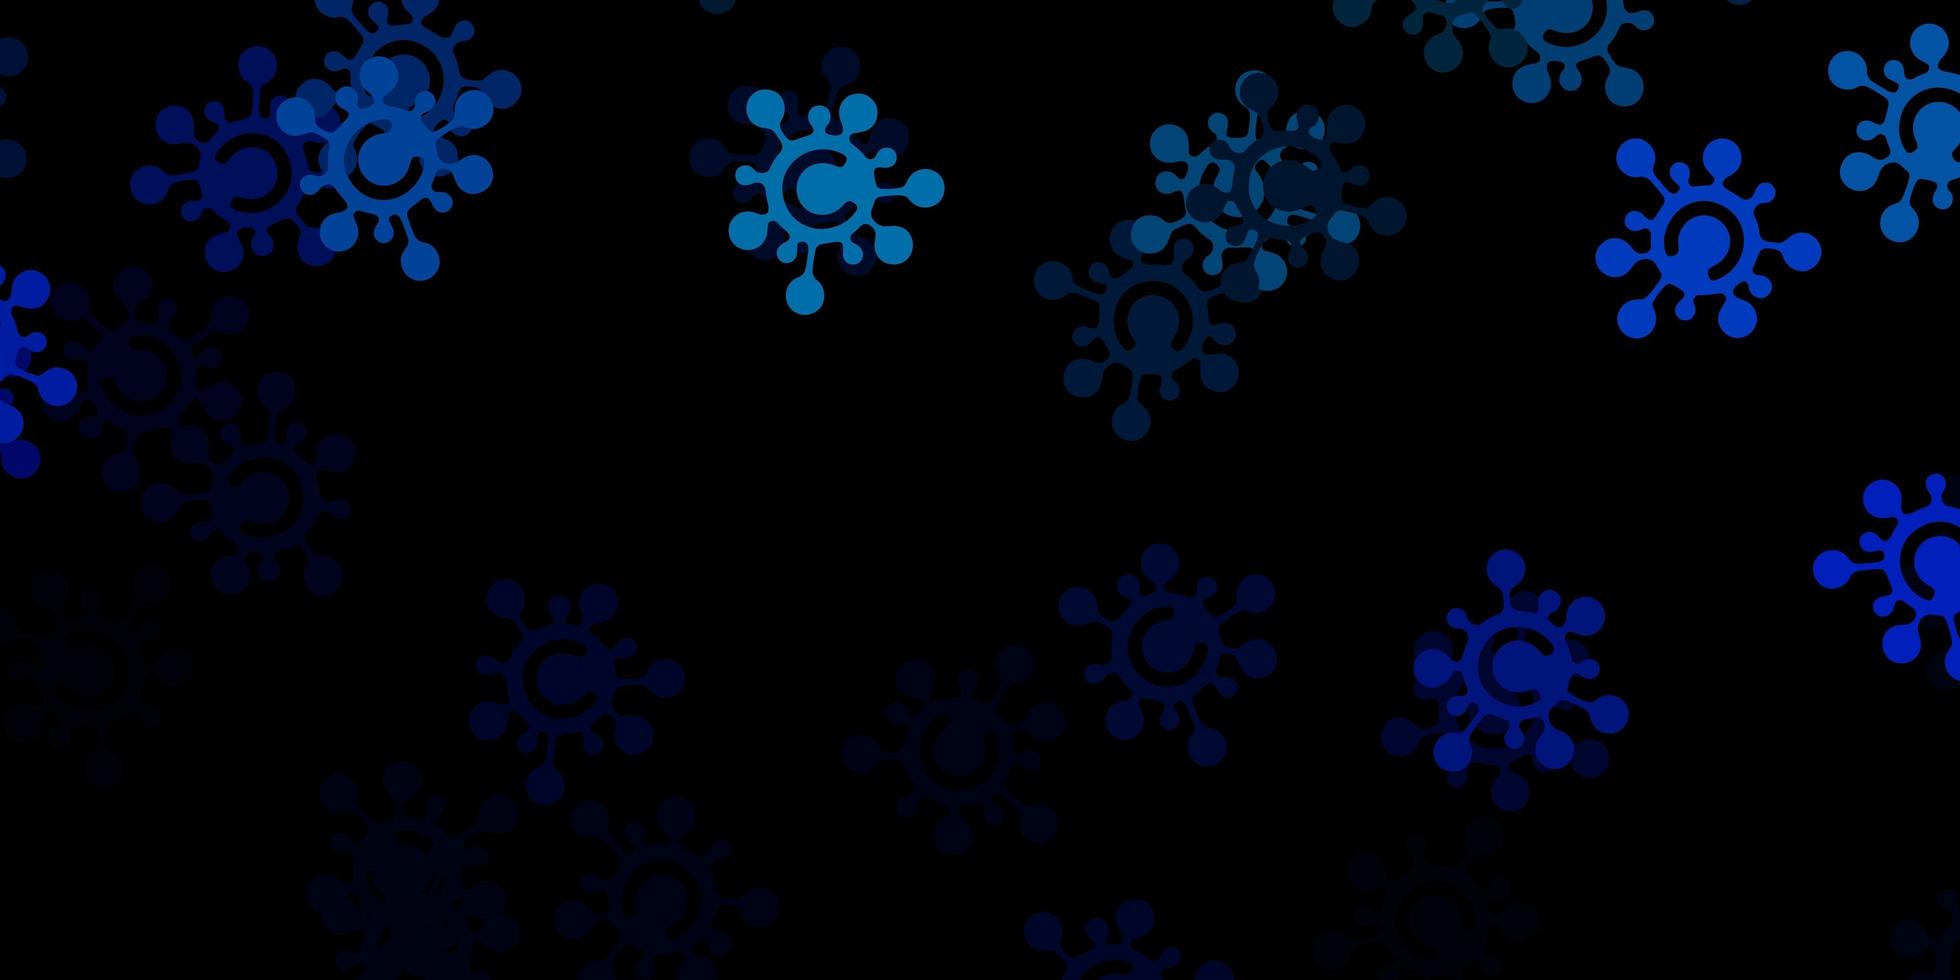 sfondo vettoriale blu scuro con simboli covid19